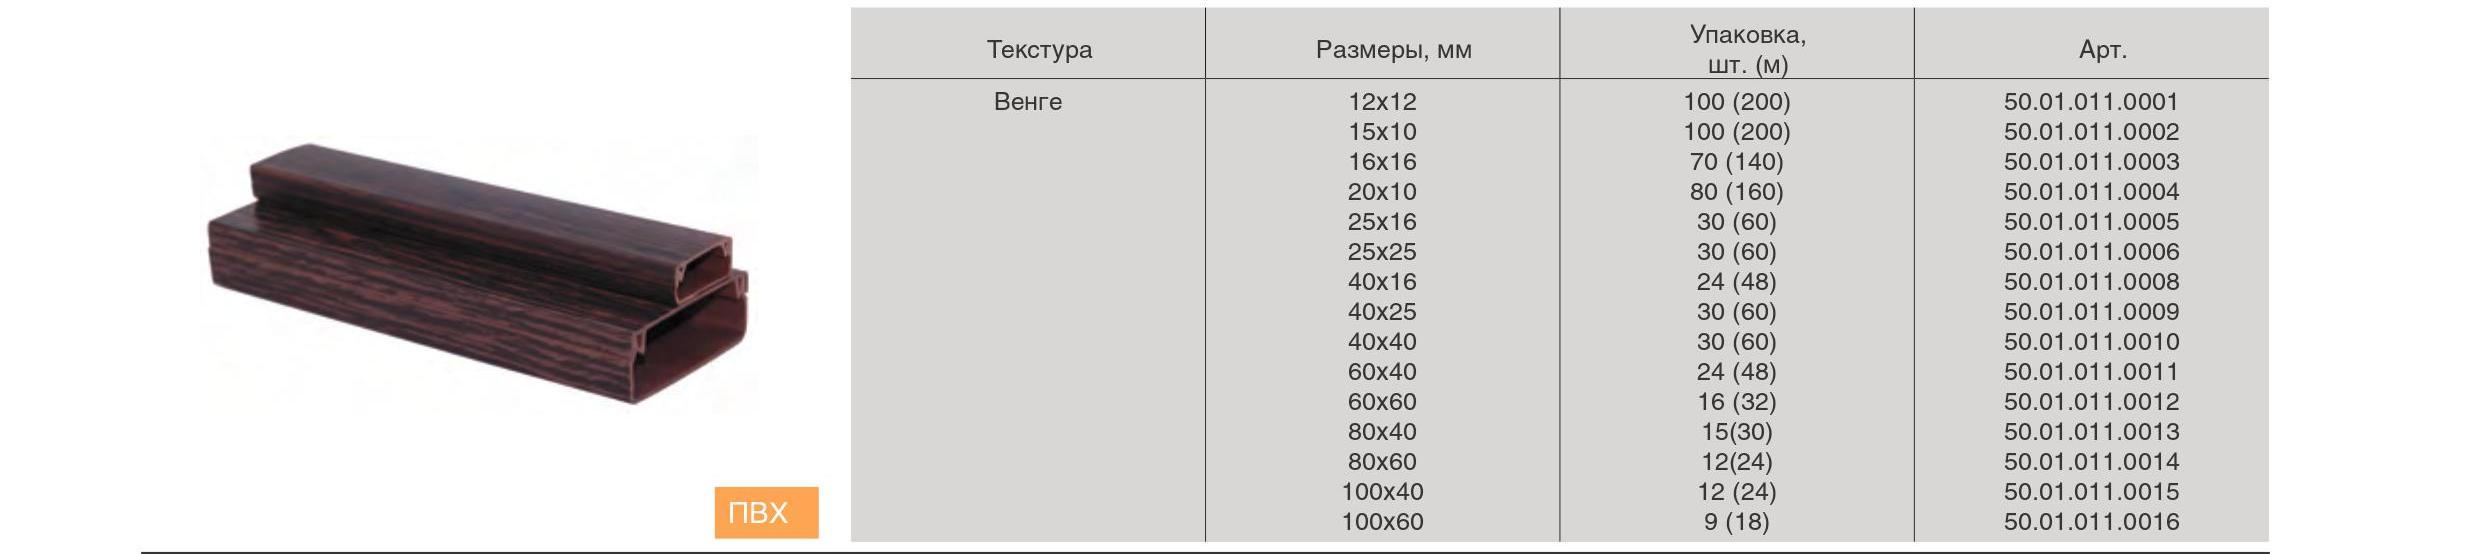 Количество проводов в кабель канале заполняемость таблица